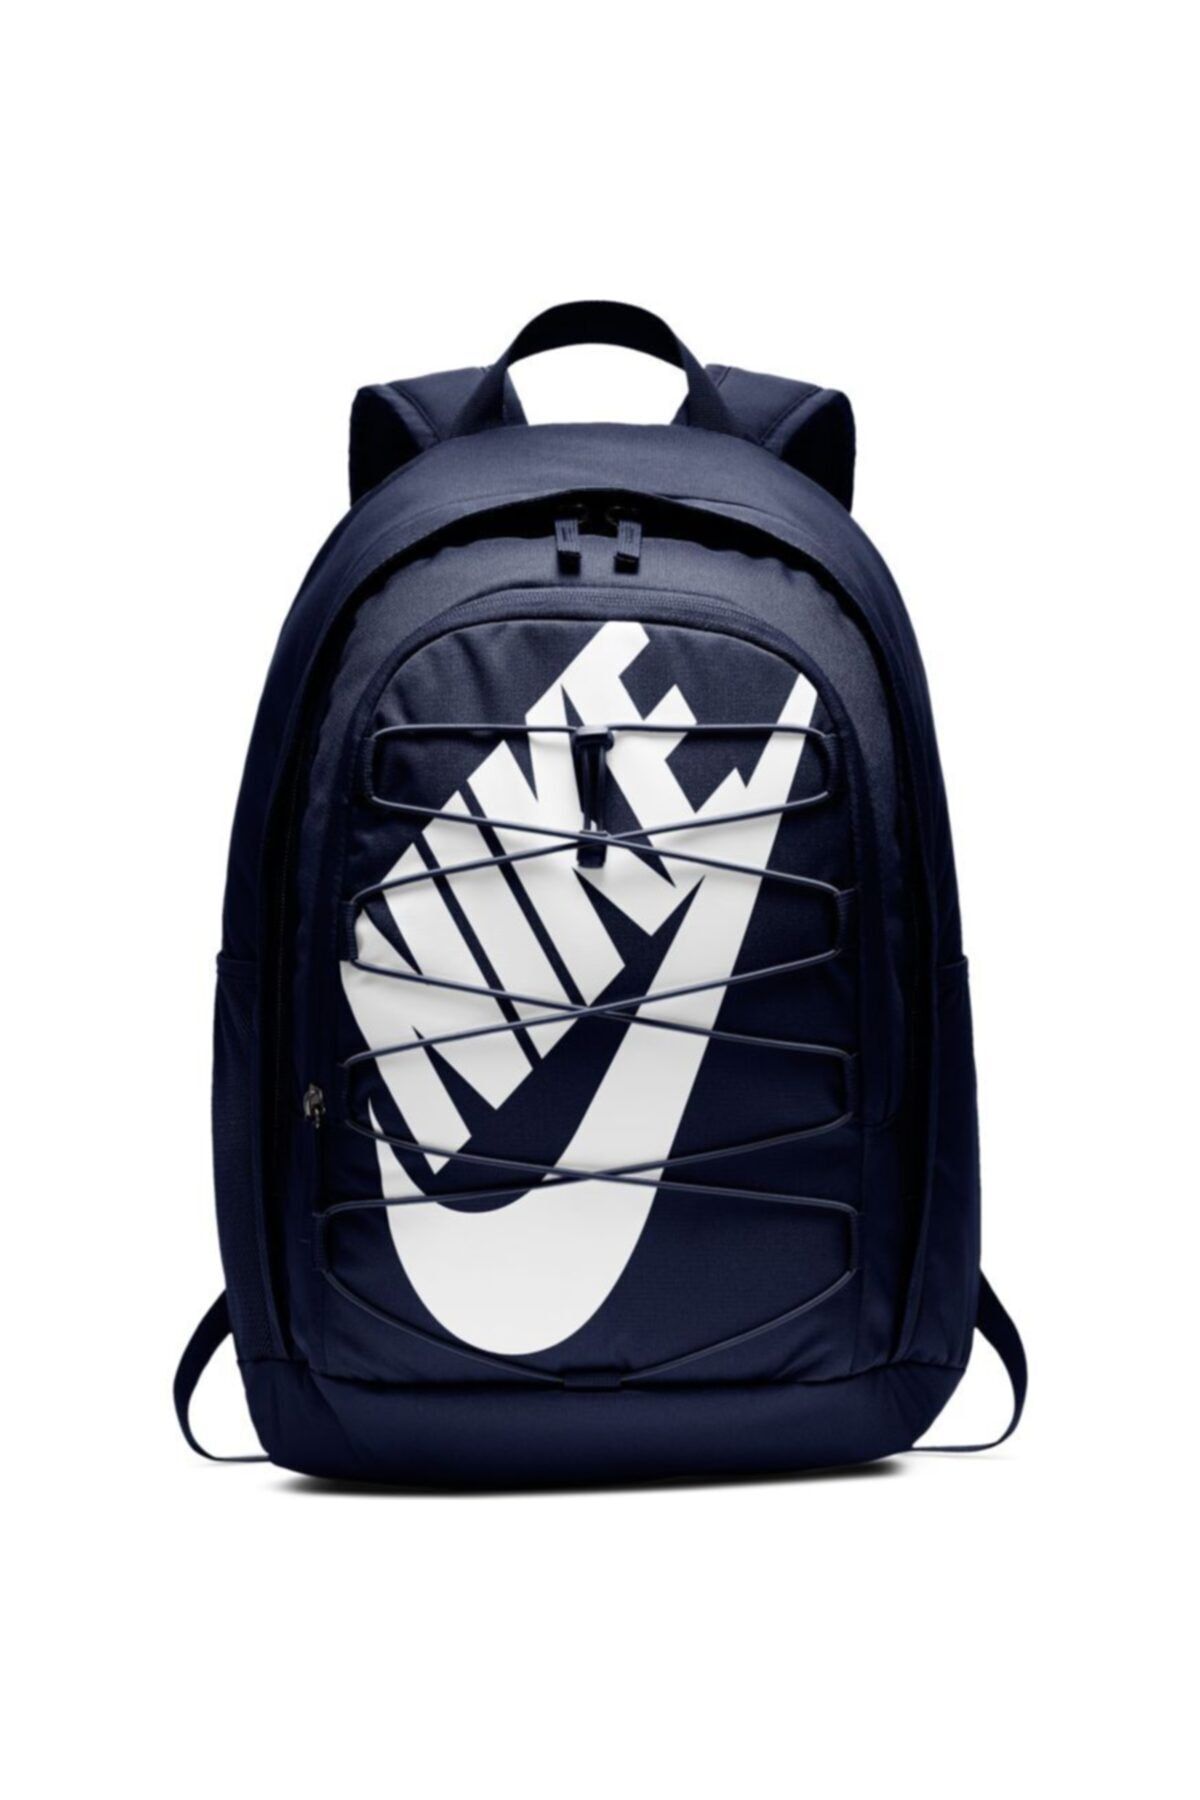 Nike Unisex Lacivert Hayward Backpack-2.0 Sırt Çantası Ba5883-451